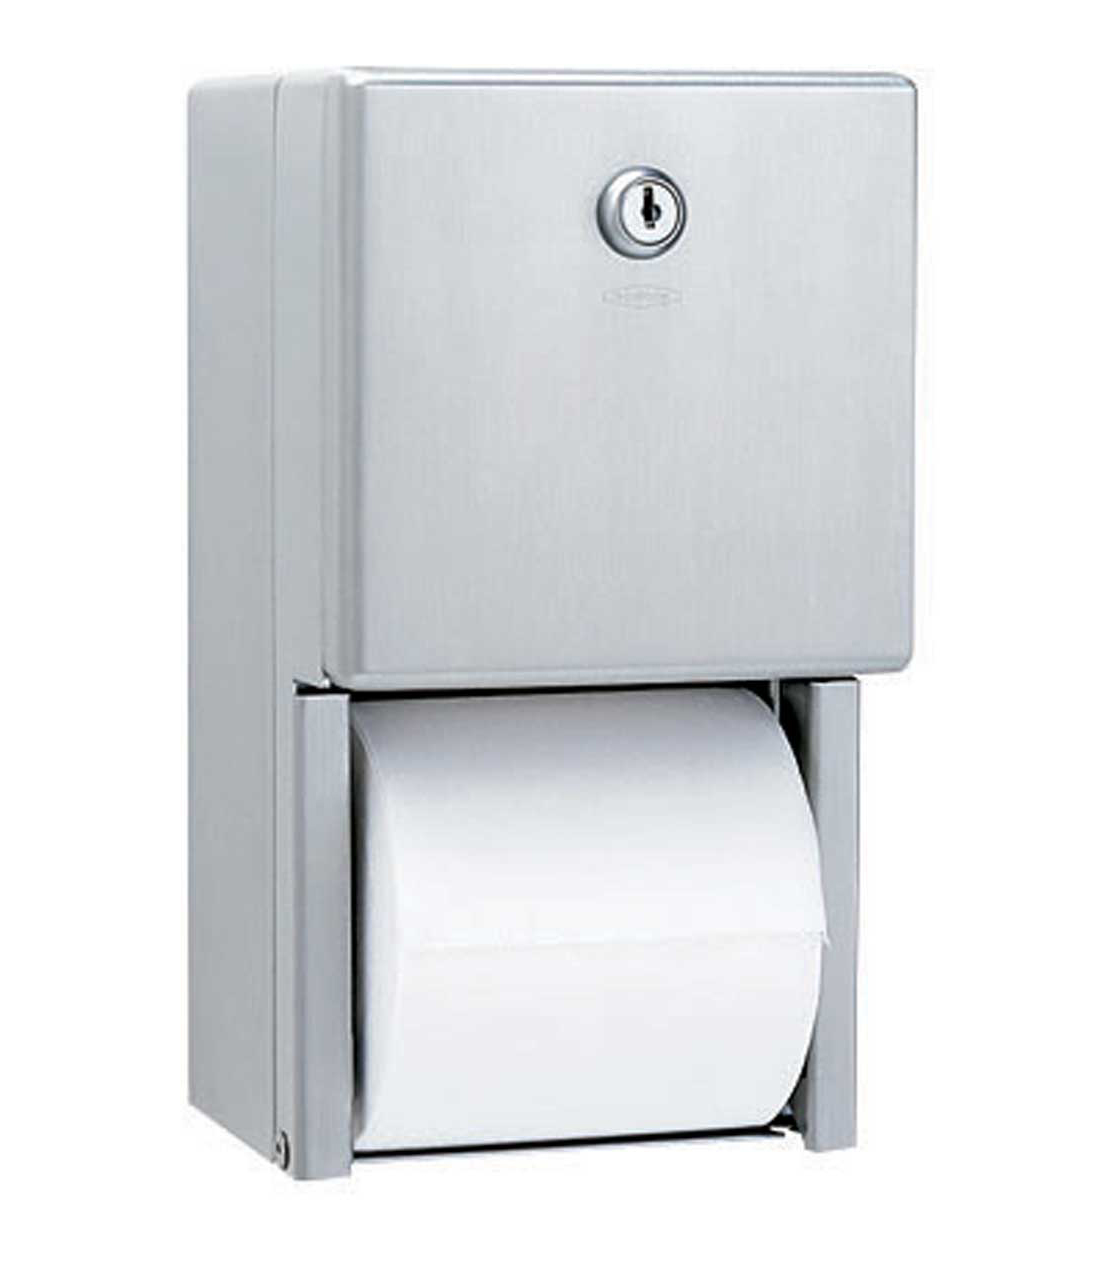 WC-Papierrollenhalter für mehrere Rollen, Aufputzmontage Image